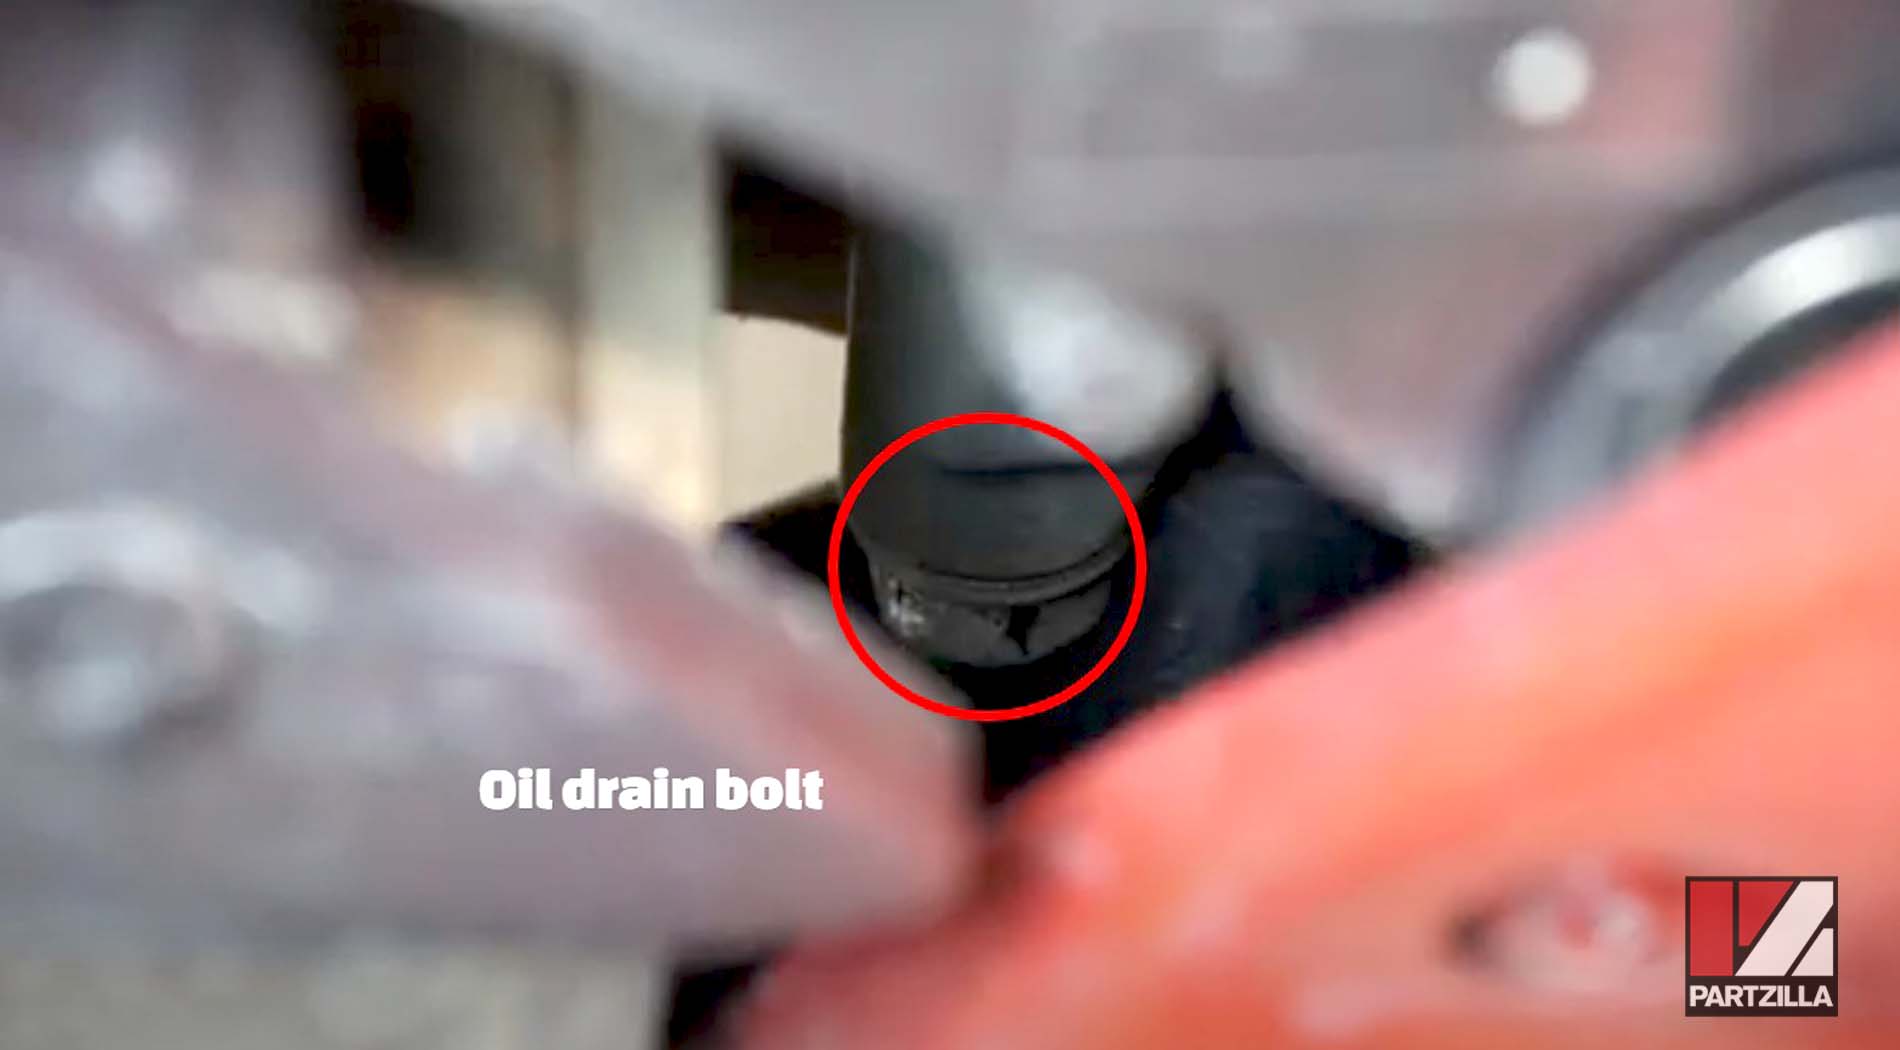 Kawasaki Ninja 650 oil drain bolt